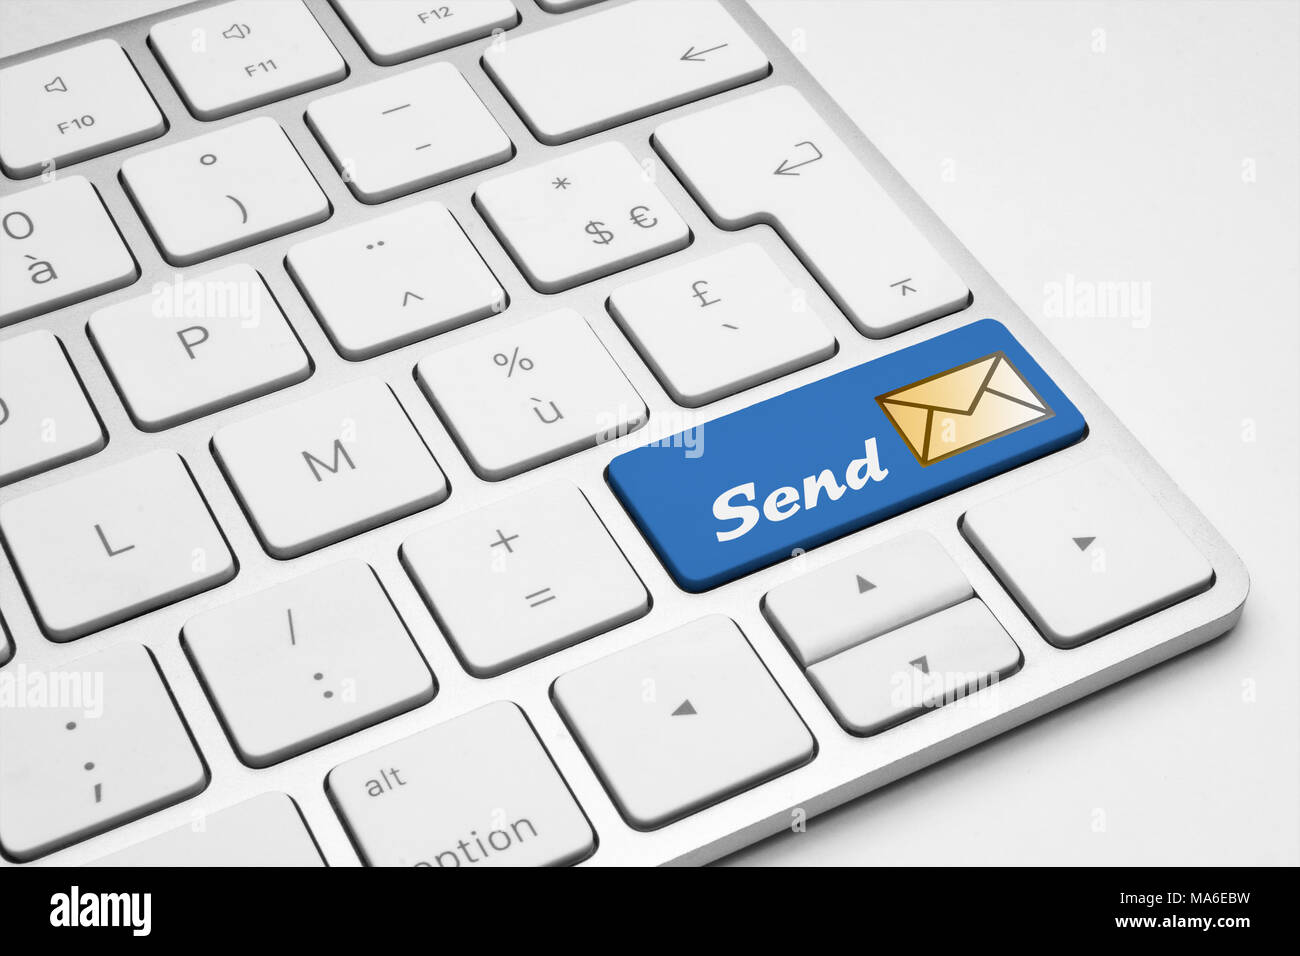 Enviar botón azul con un icono de mail en un teclado aislado blanco - Internet, web, medios sociales y empresariales concepto ilustrativos. Foto de stock